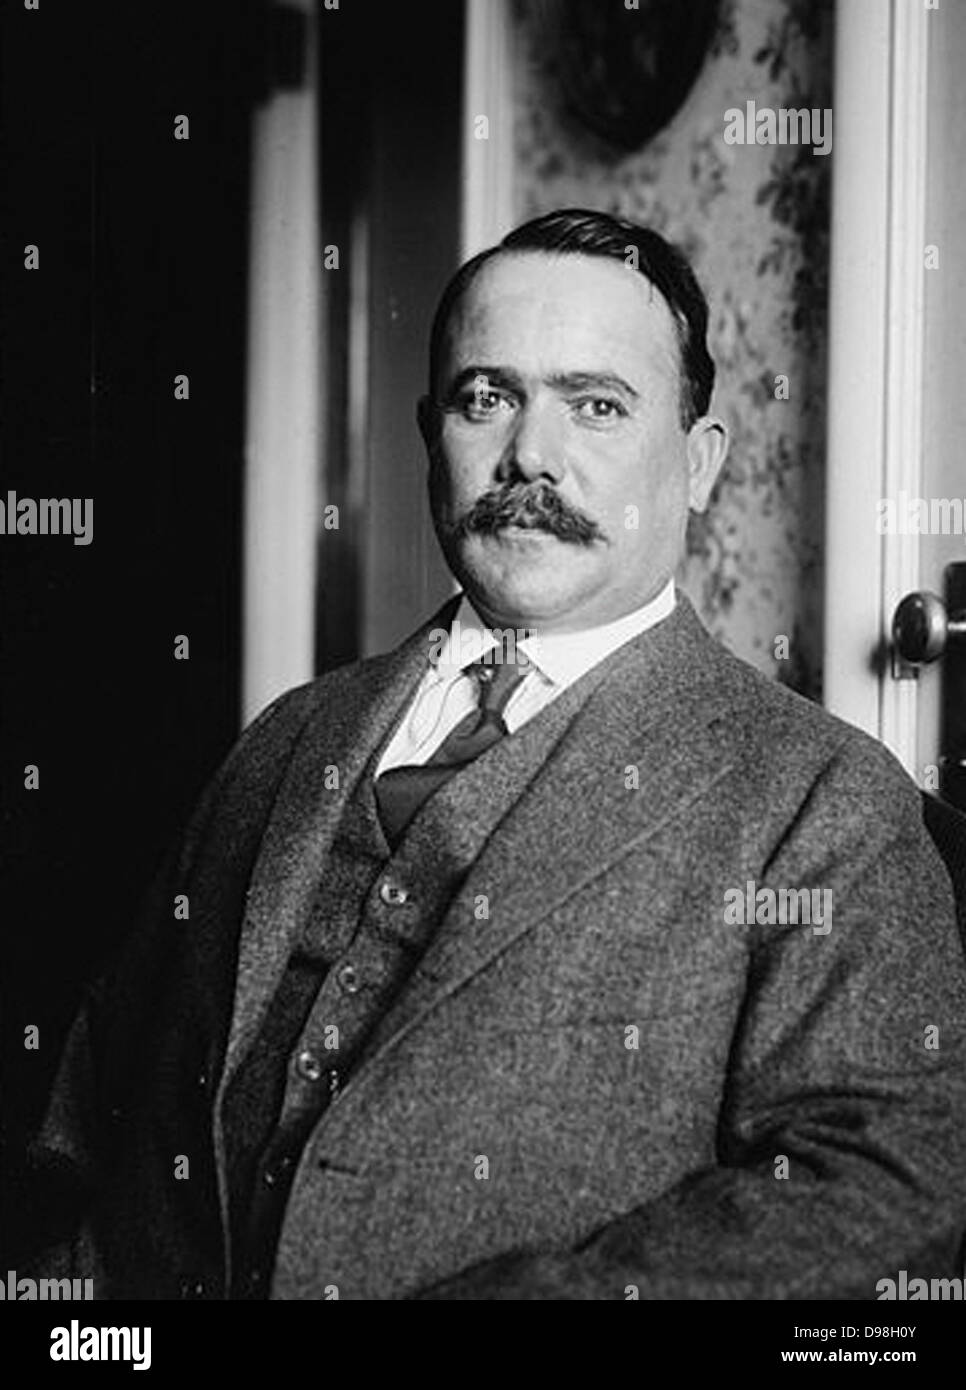 Generale Alvaro Obregón Salido (Febbraio 19, 1880 - Luglio 17, 1928) è stato il presidente del Messico dal 1920 al 1924. Egli fu assassinato nel 1928 Foto Stock